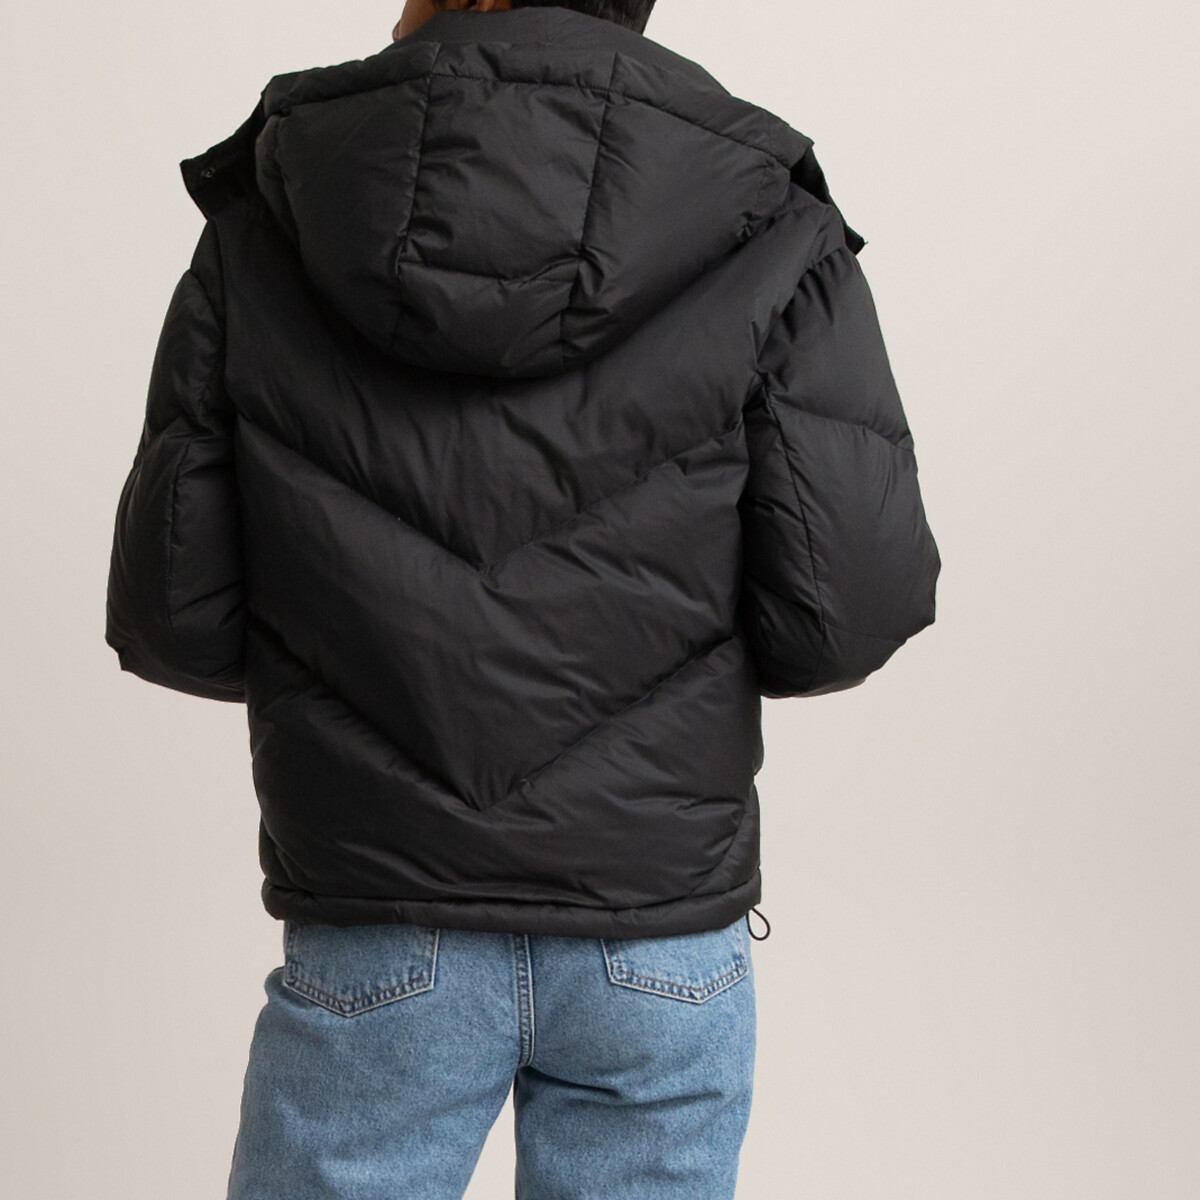 Куртка La Redoute Стеганая короткая с капюшоном 42 (FR) - 48 (RUS) черный, размер 42 (FR) - 48 (RUS) Стеганая короткая с капюшоном 42 (FR) - 48 (RUS) черный - фото 4